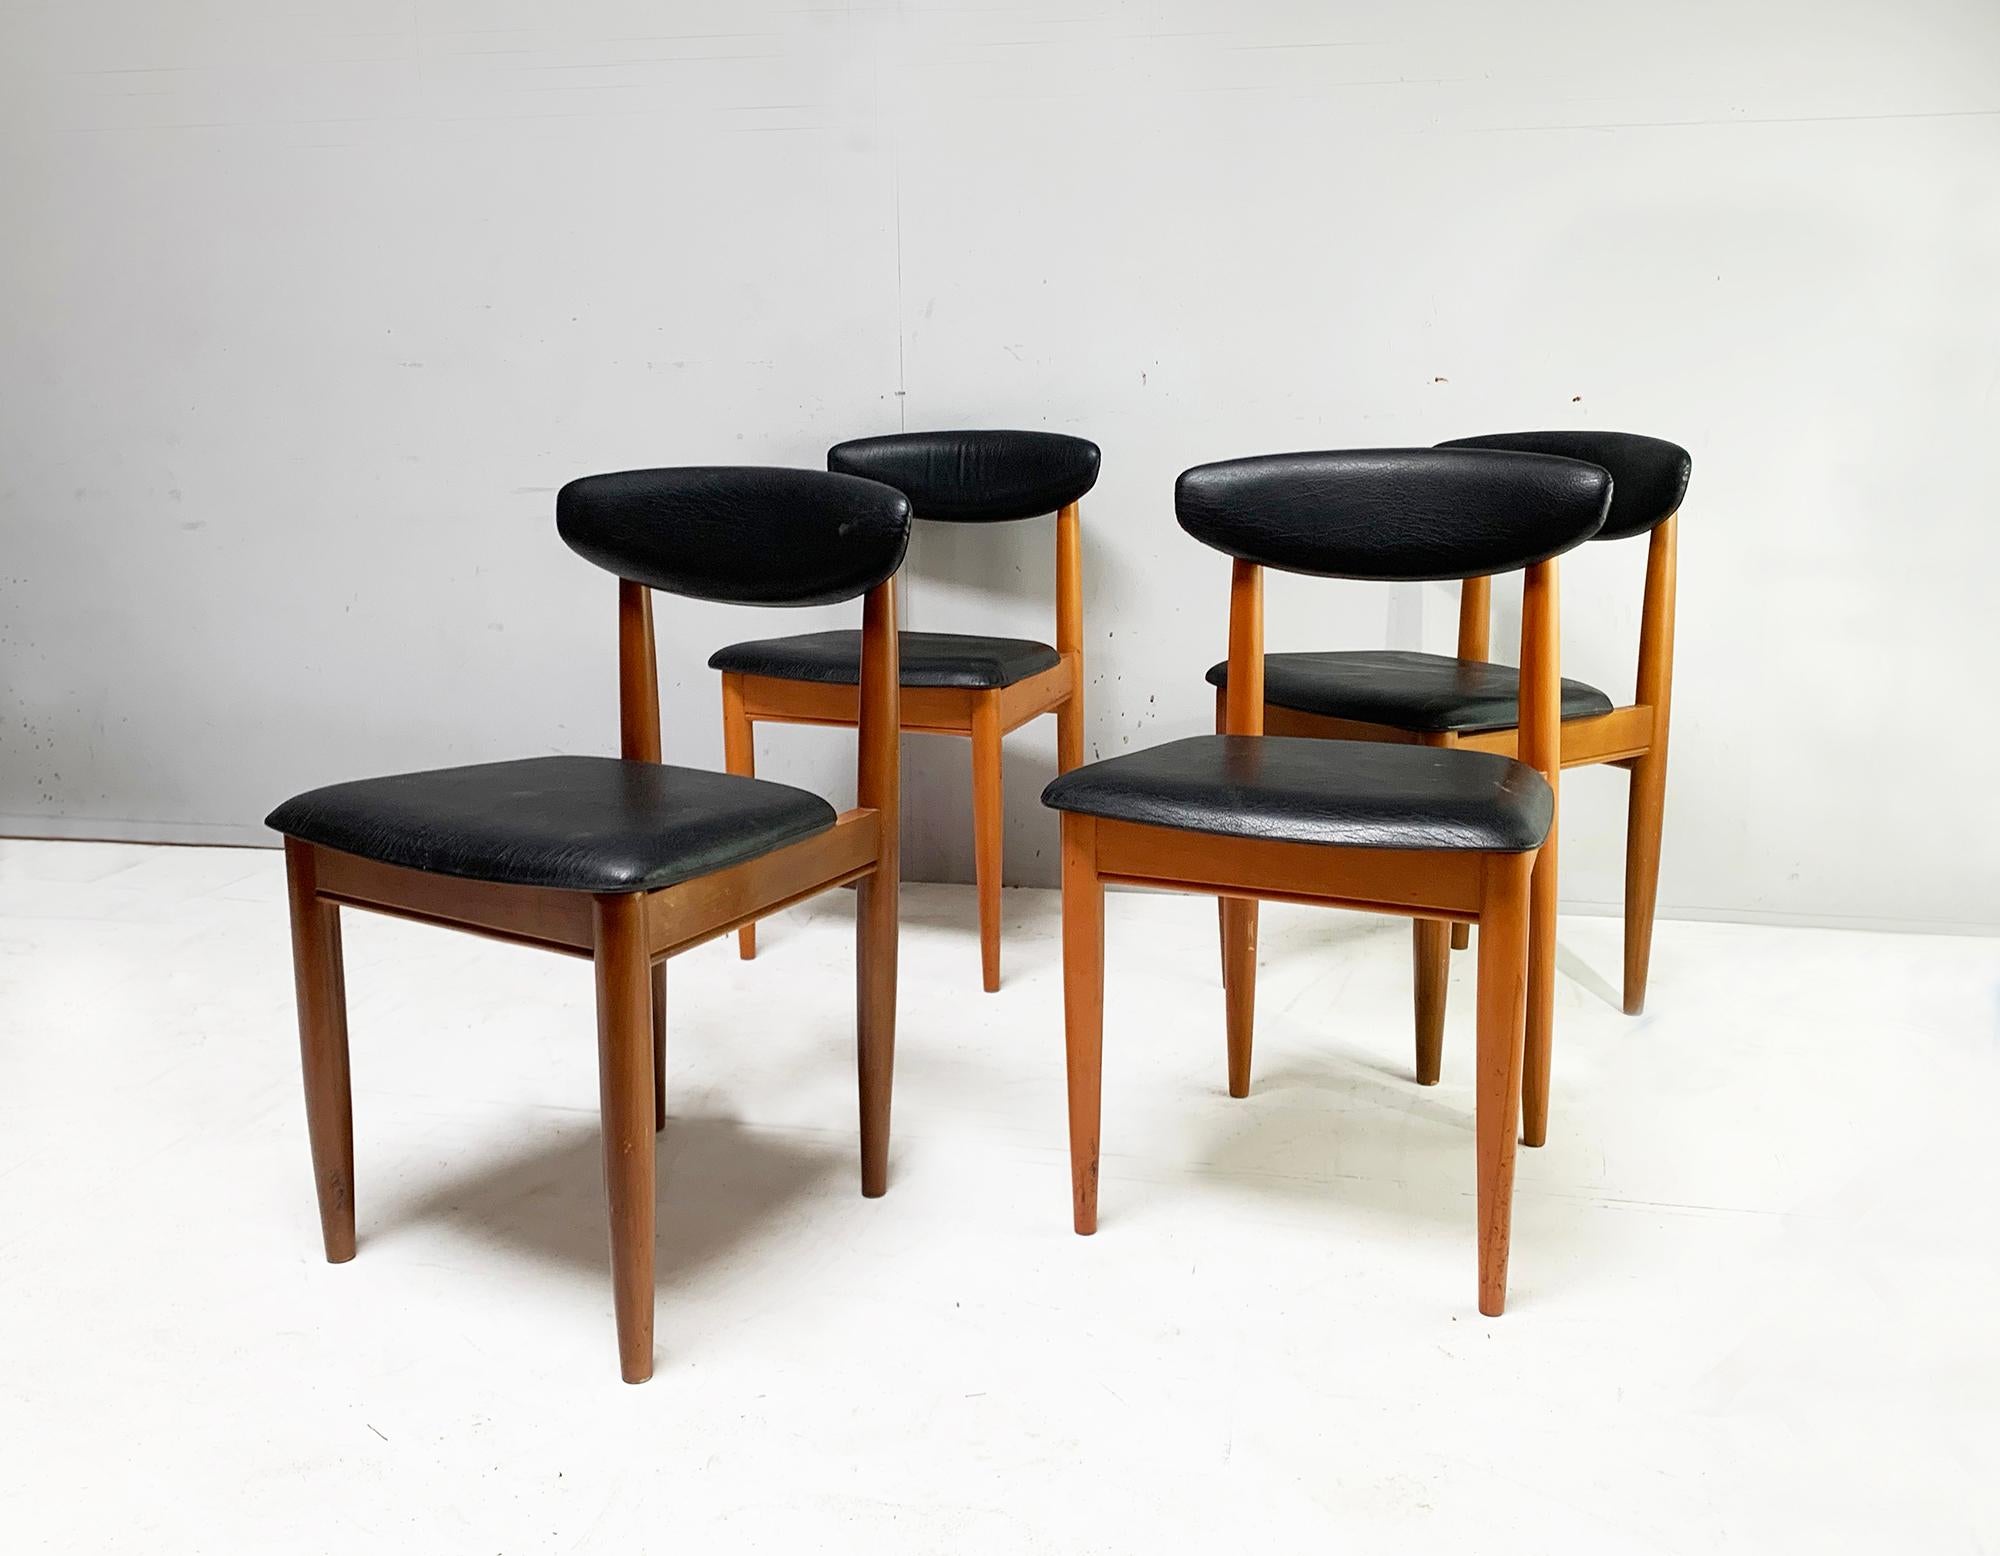 Der angegebene Preis gilt für die VIER Stühle

Das 1957 von Chaim Schreiber gegründete Unternehmen Schreiber furniture ist eine interessante britische Erfolgsgeschichte. In den 70er Jahren war das Unternehmen einer der größten Namen in der